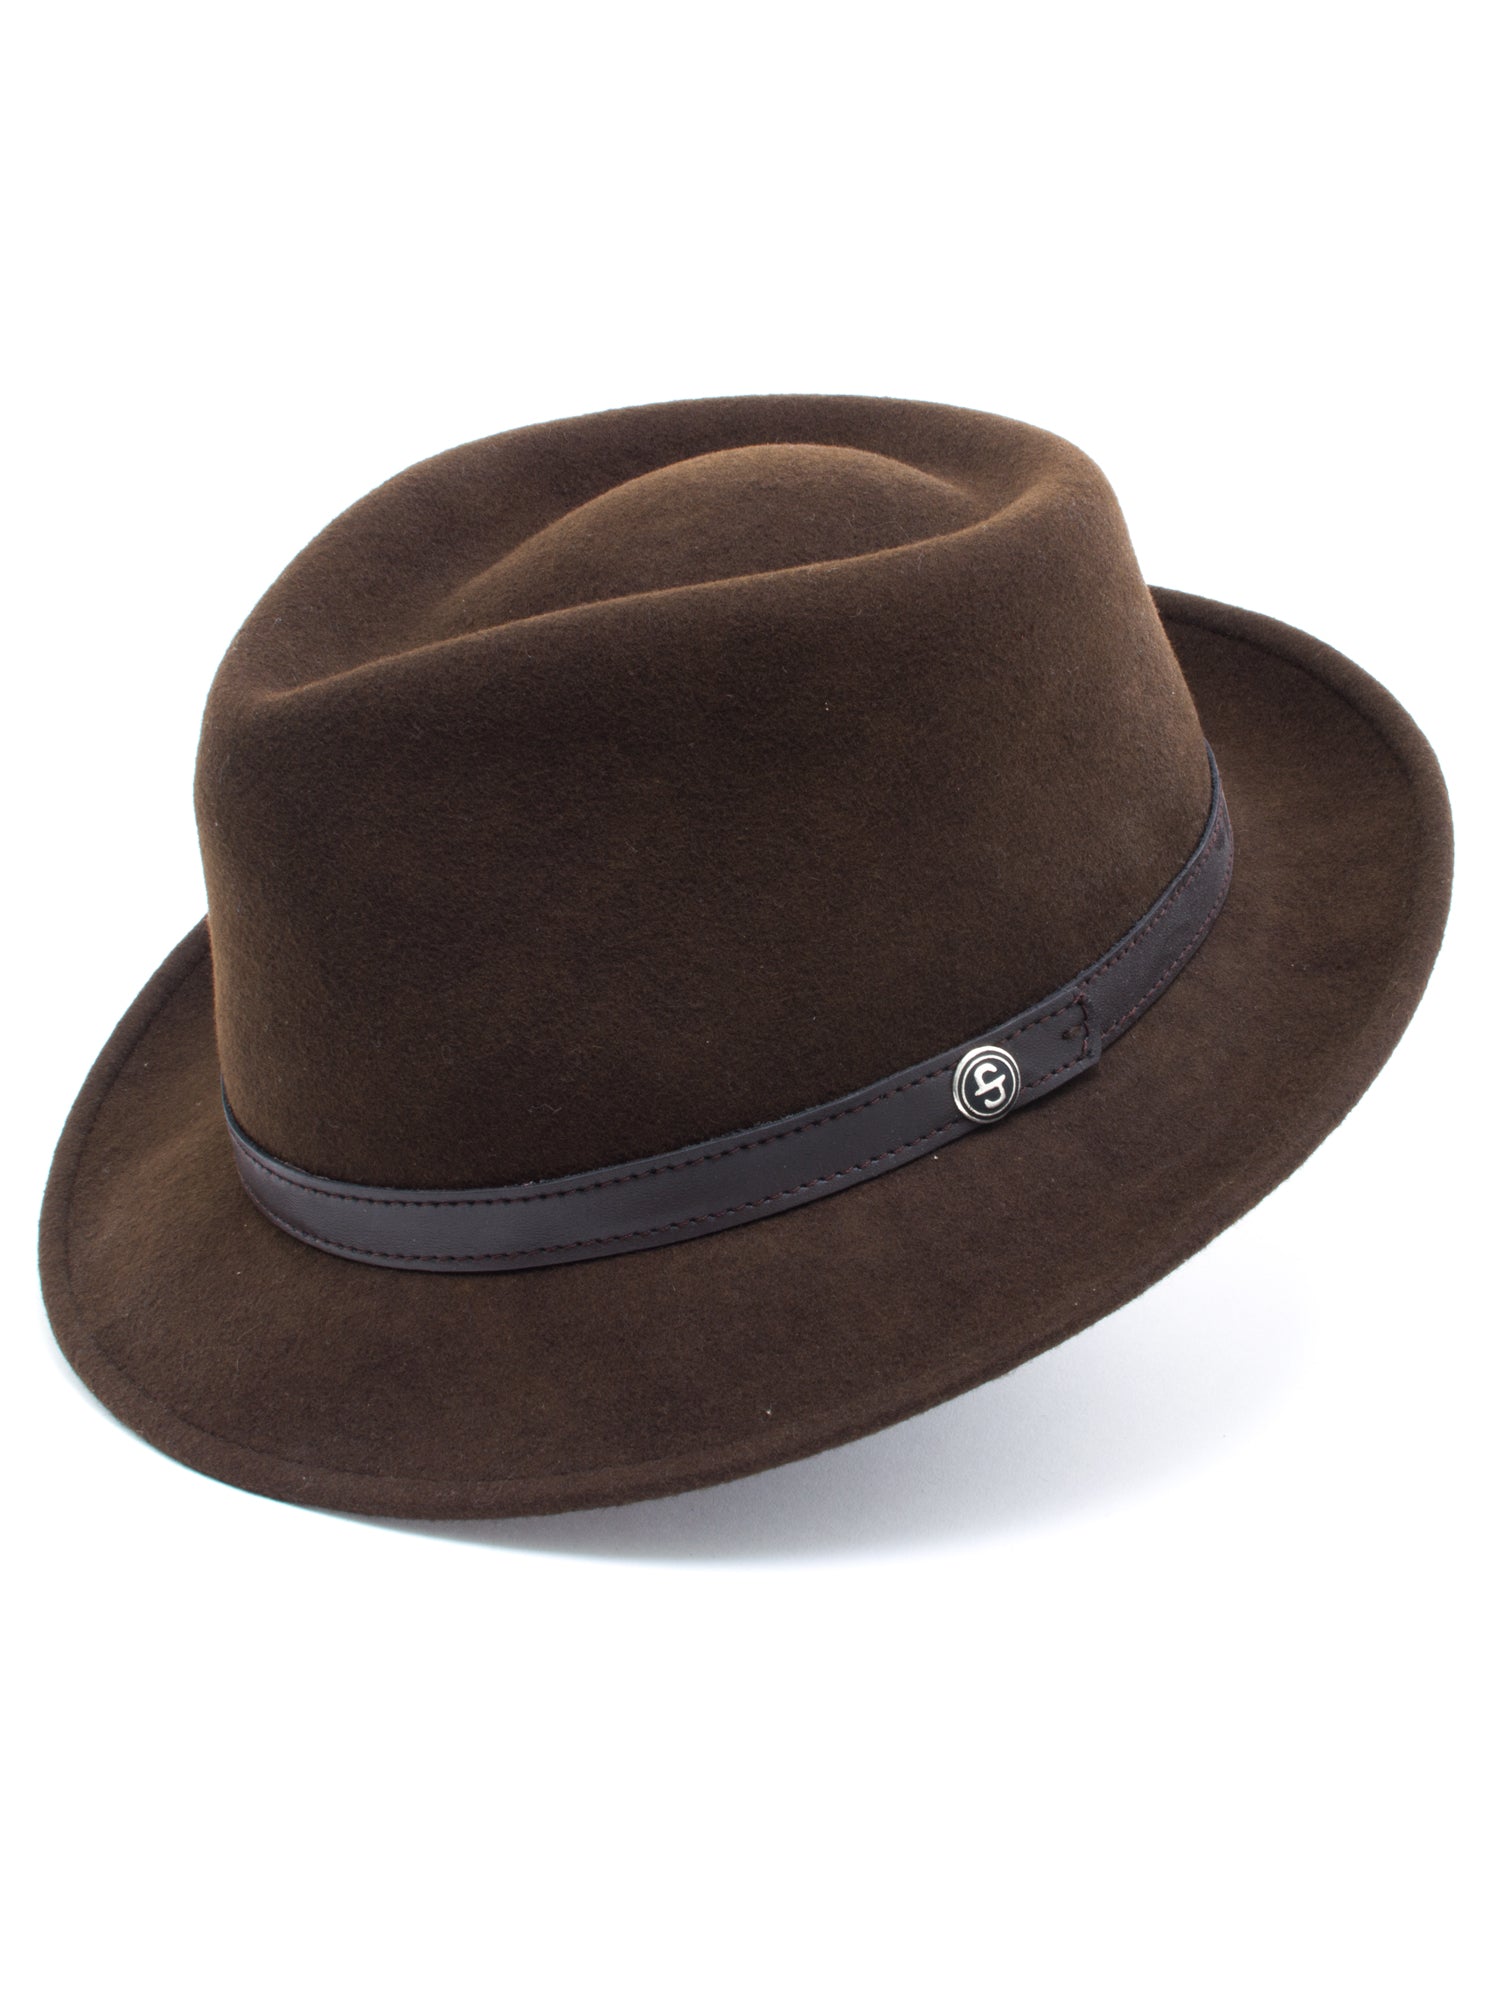 Stetson 100% Wool Felt Prof Hats in Brown